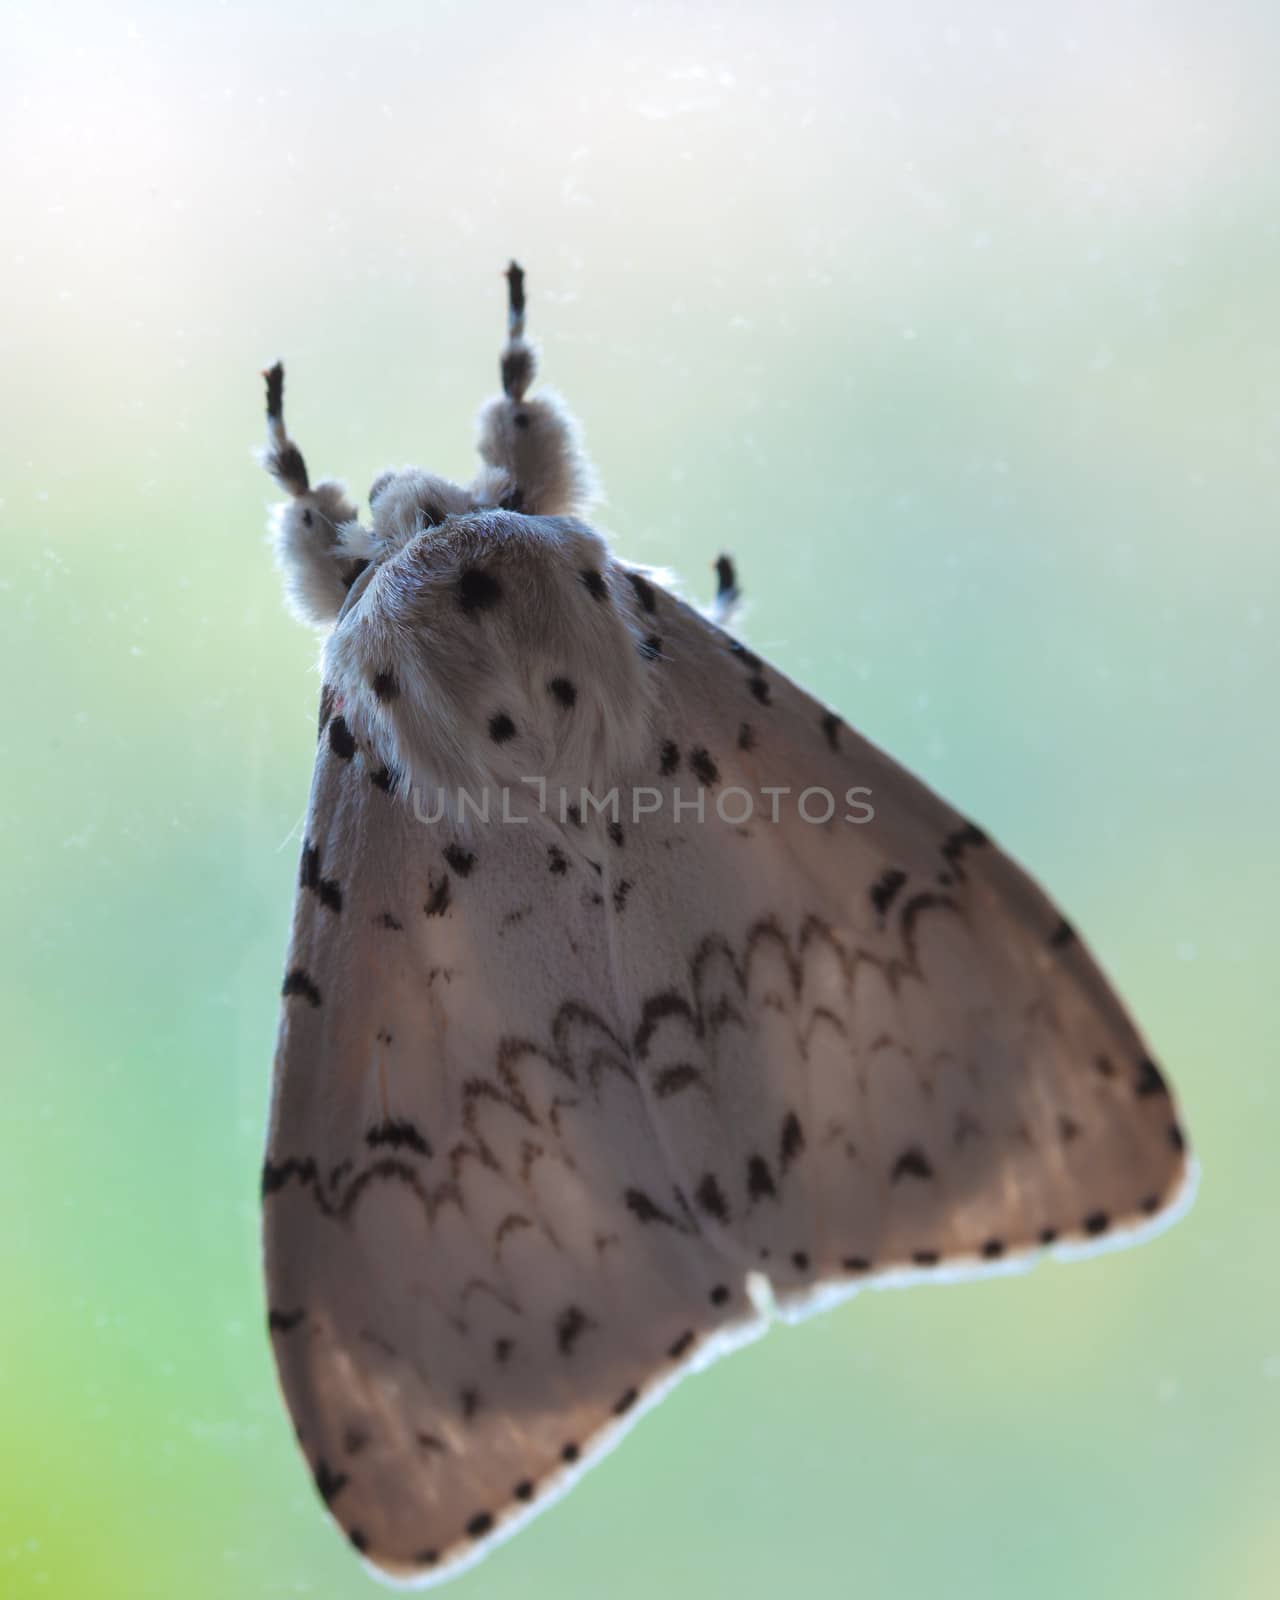 Moths, butterfly on mirror